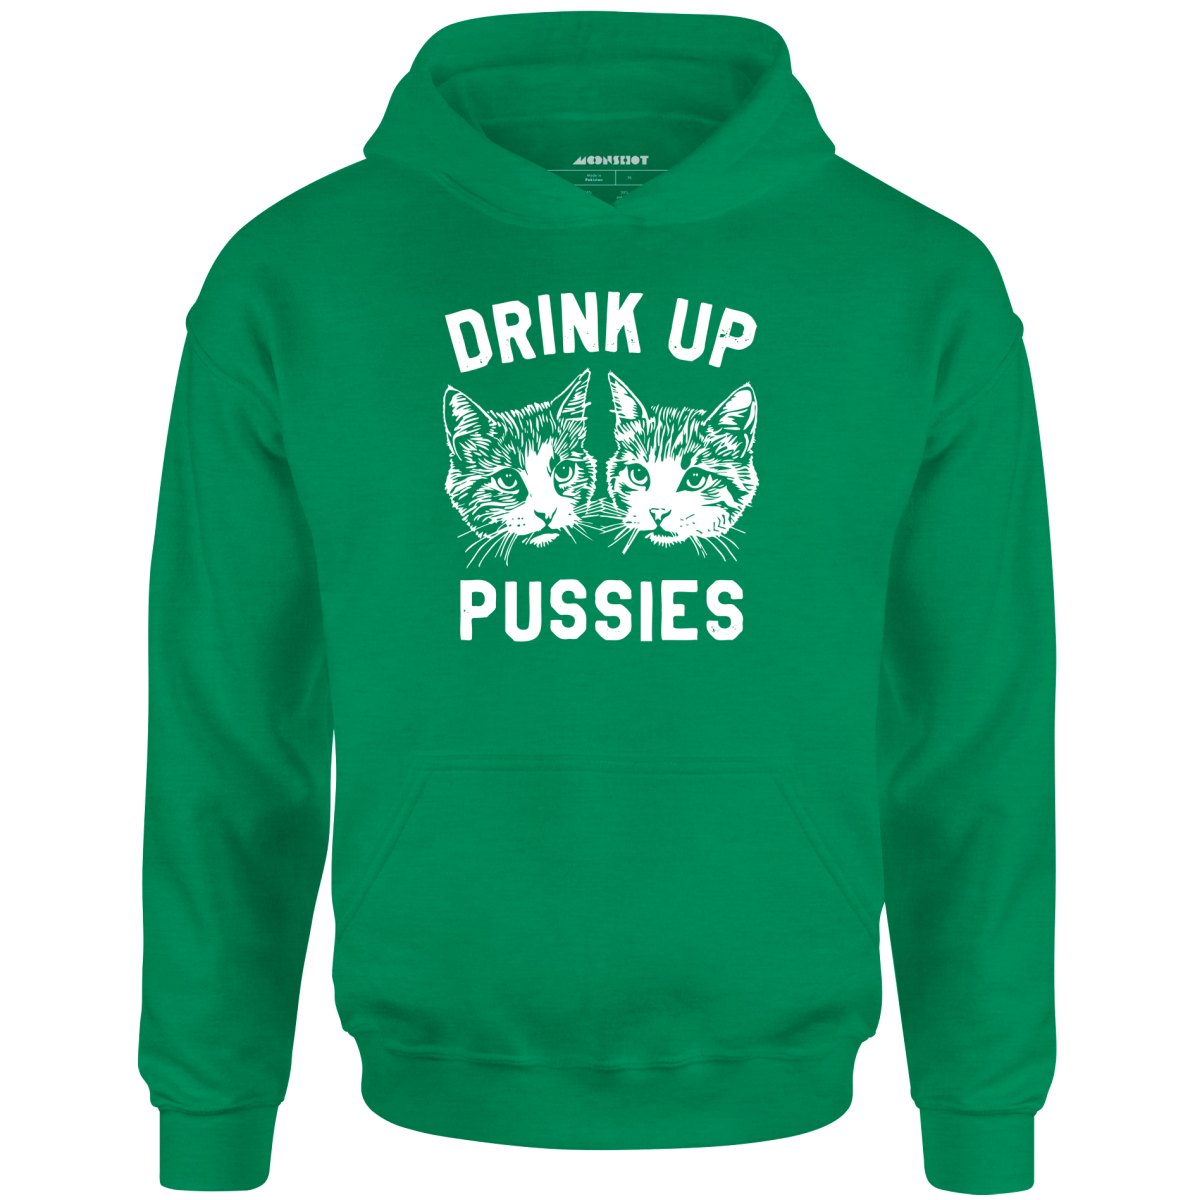 Drink Up Pussies - Unisex Hoodie